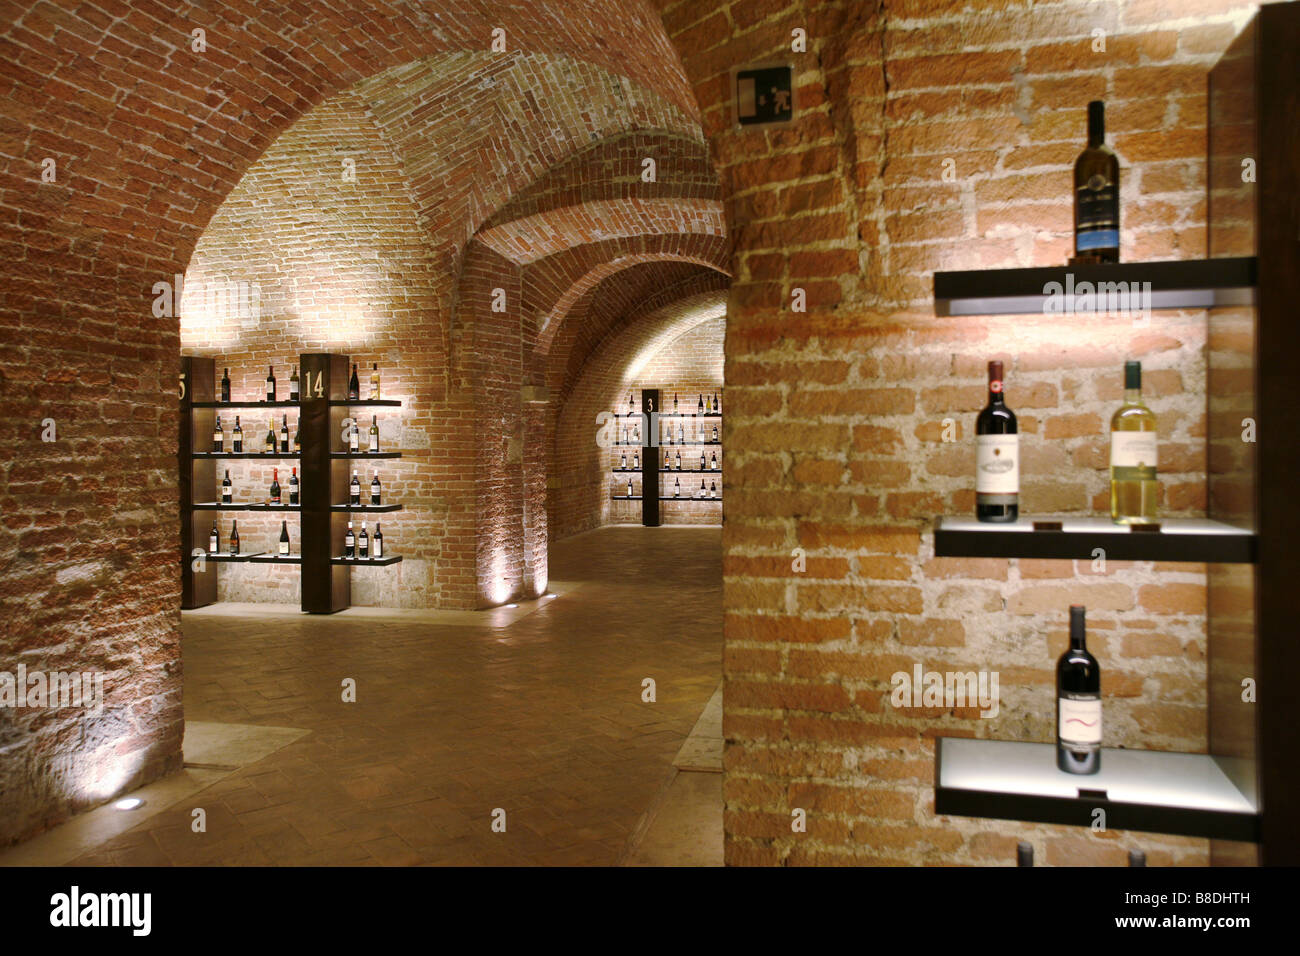 Enoteca Italiana Winecellar, Siena, Tuscany, Italy Stock Photo